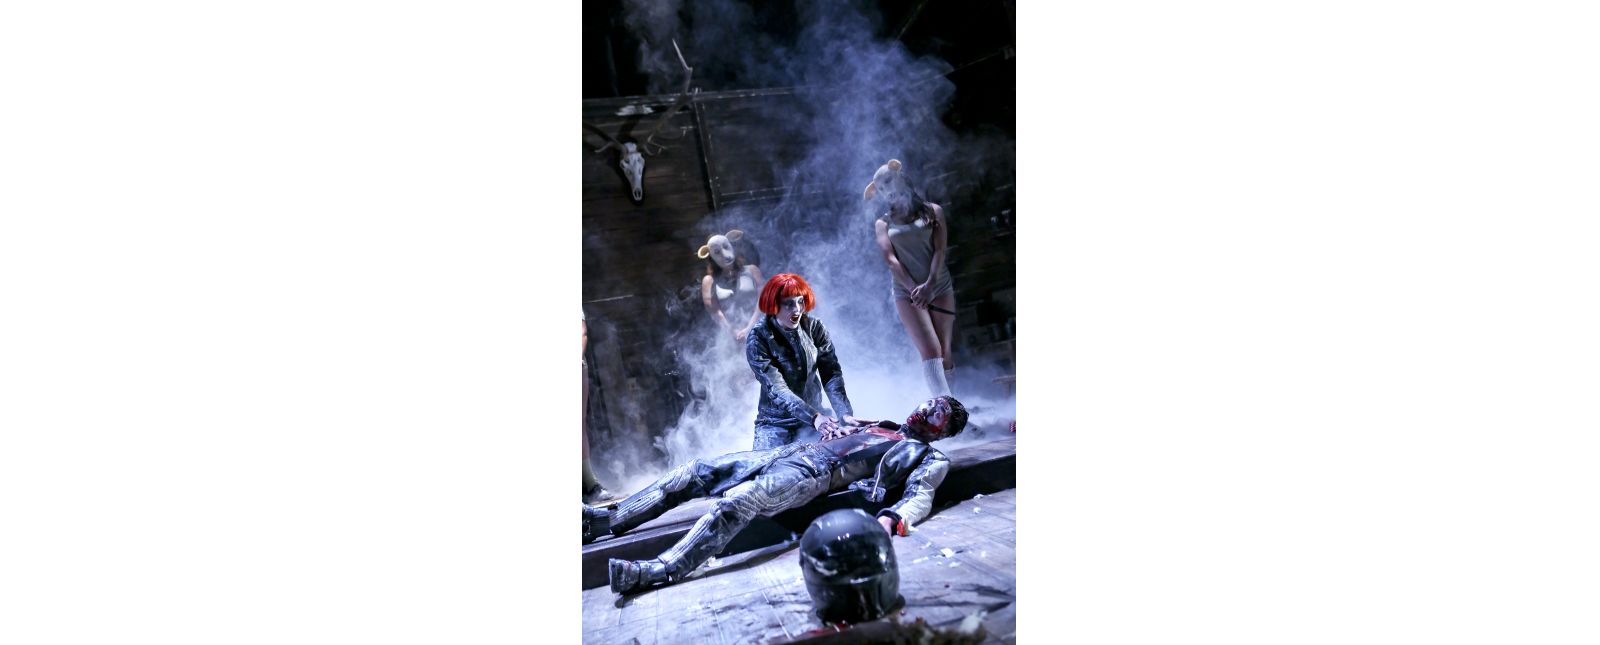 The Black Forest Chainsaw Opera // Inga Schäfer, Lukas Hupfeld // Birgit Hupfeld // 2018